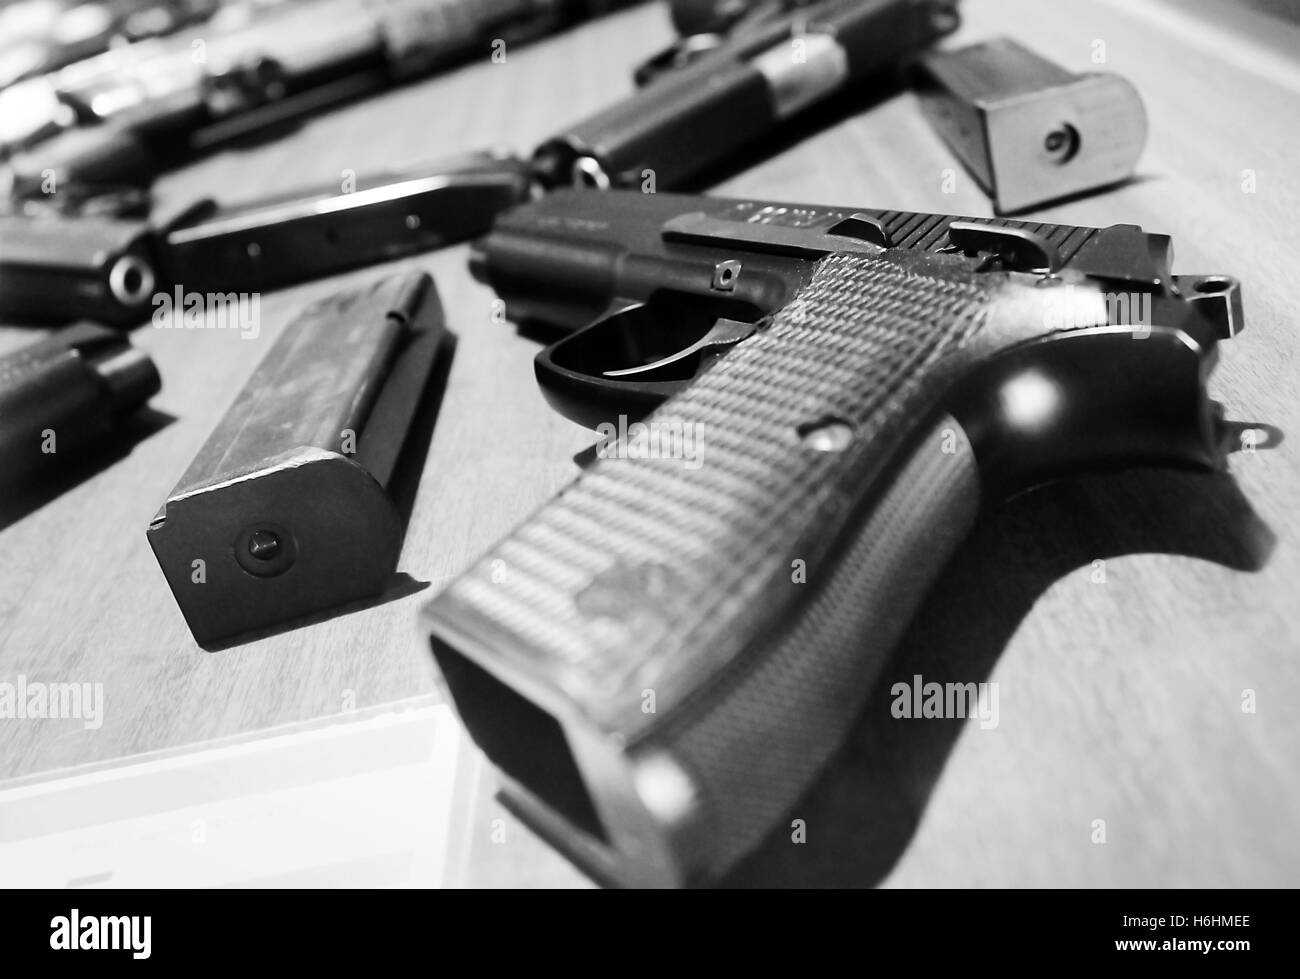 Les armes de poing semi-automatiques ou pistolets et ses magazines. L'arme sur le côté près de P2 est un pistolet fabriqué en Indonésie. Banque D'Images